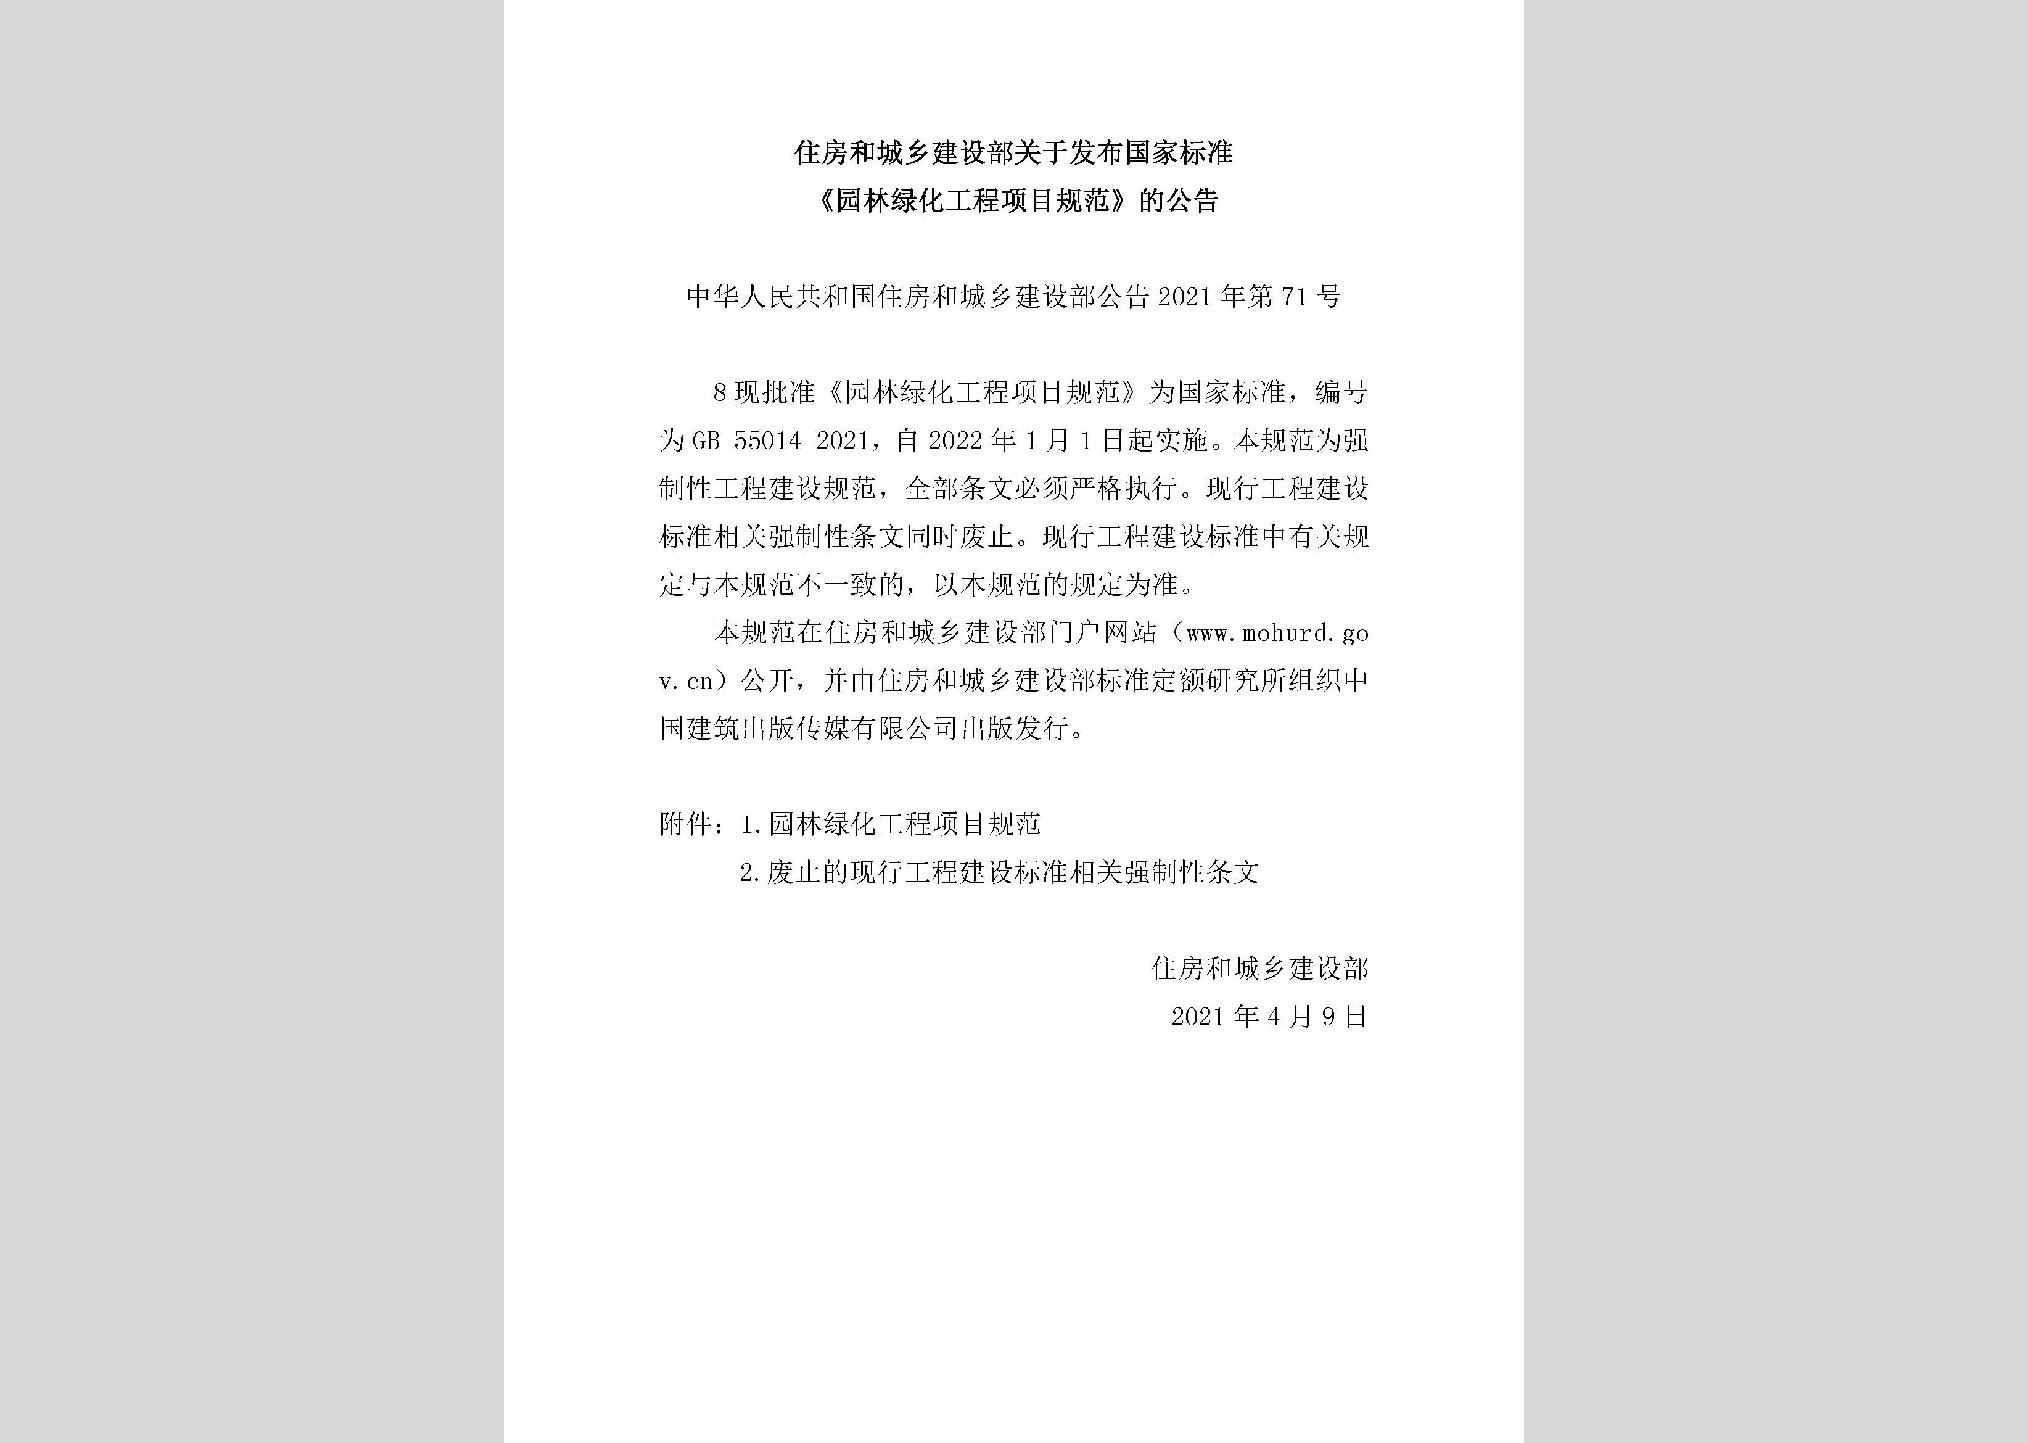 中华人民共和国住房和城乡建设部公告2021年第71号：住房和城乡建设部关于发布国家标准《园林绿化工程项目规范》的公告